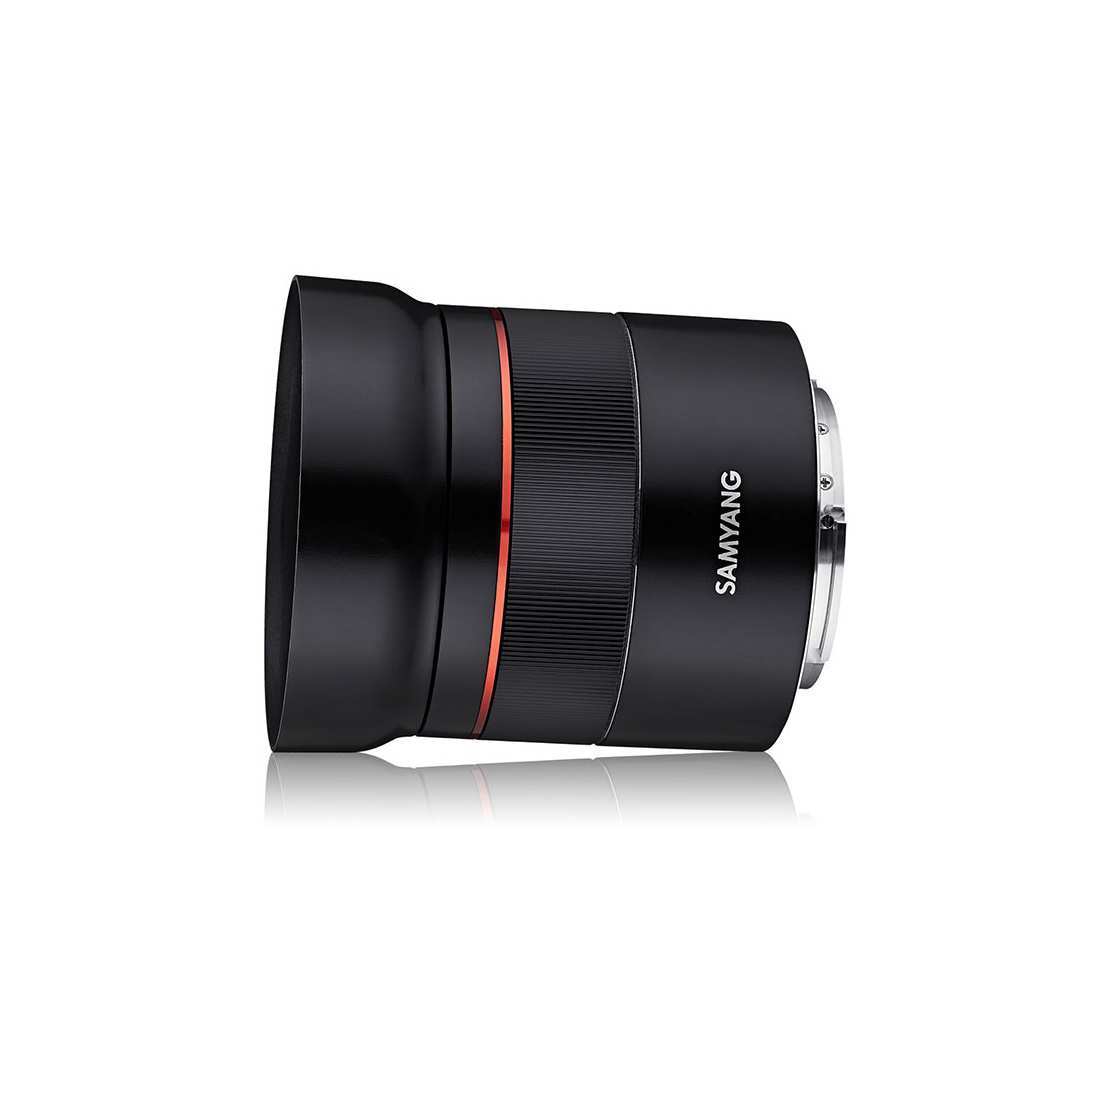 Samyang AF 45mm F1,8 FE Lens (Sony E)